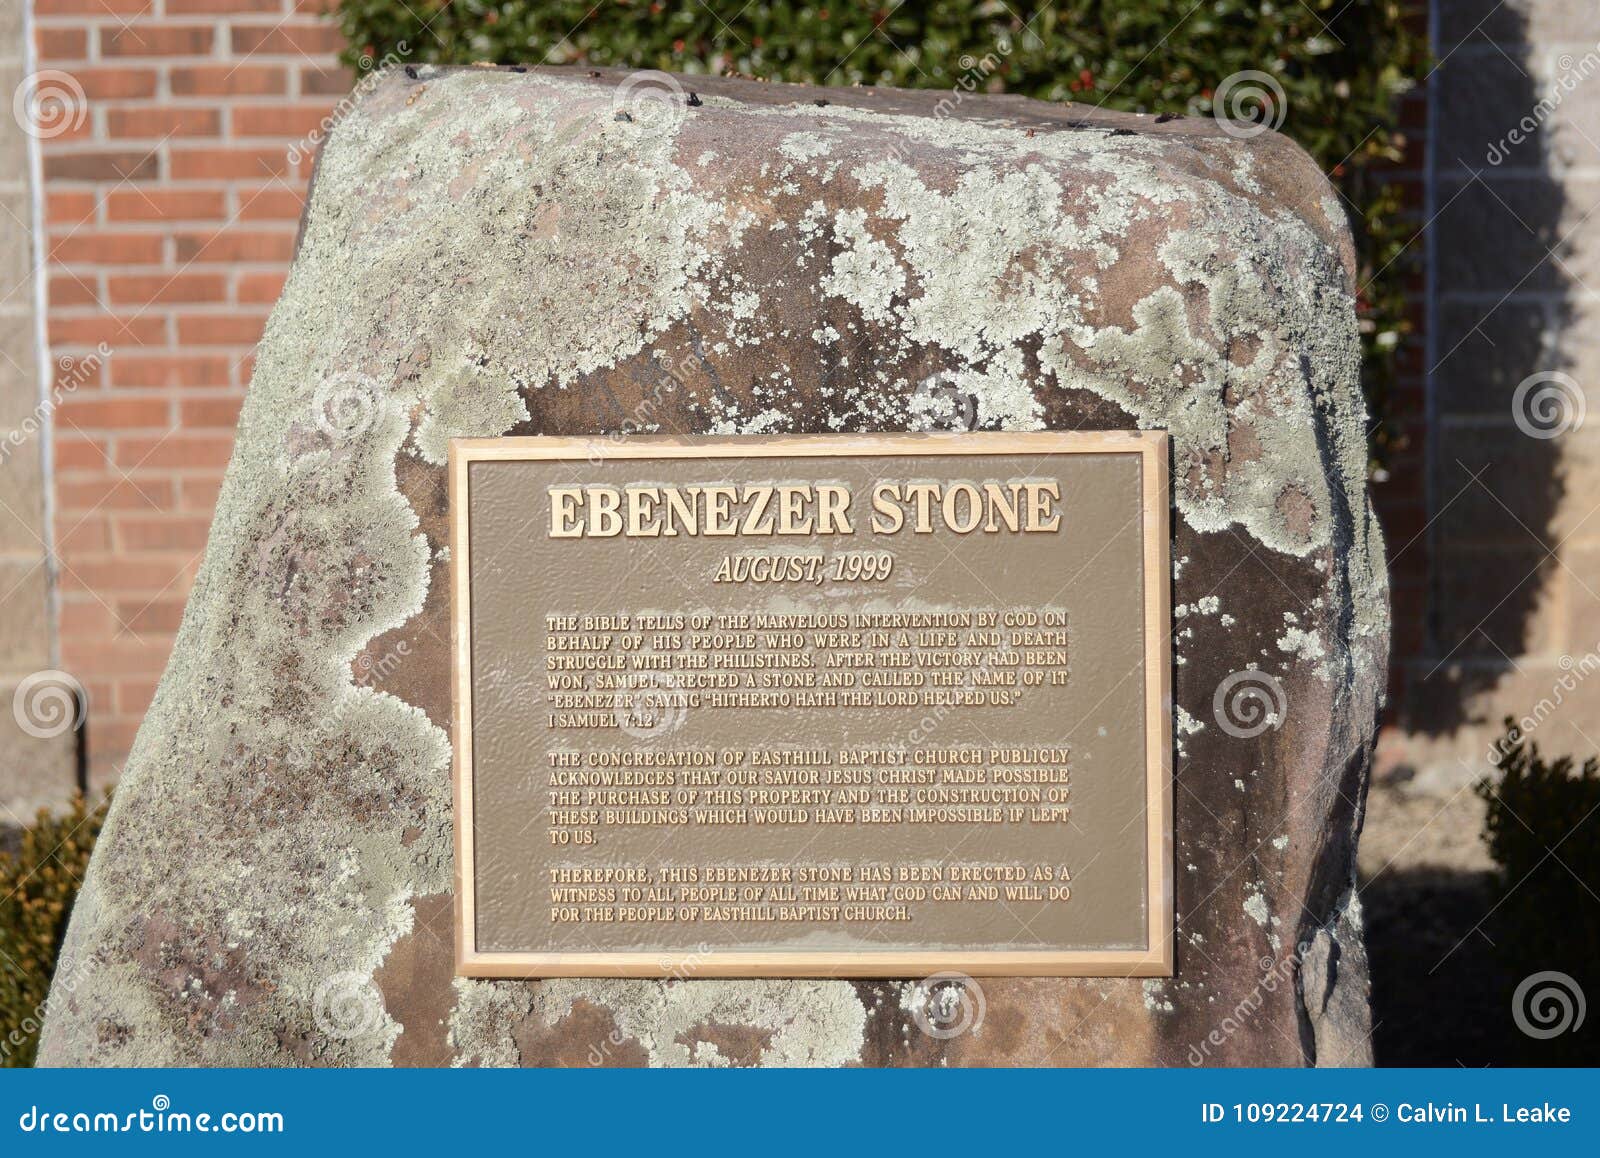 ebenezer stone of remembrance